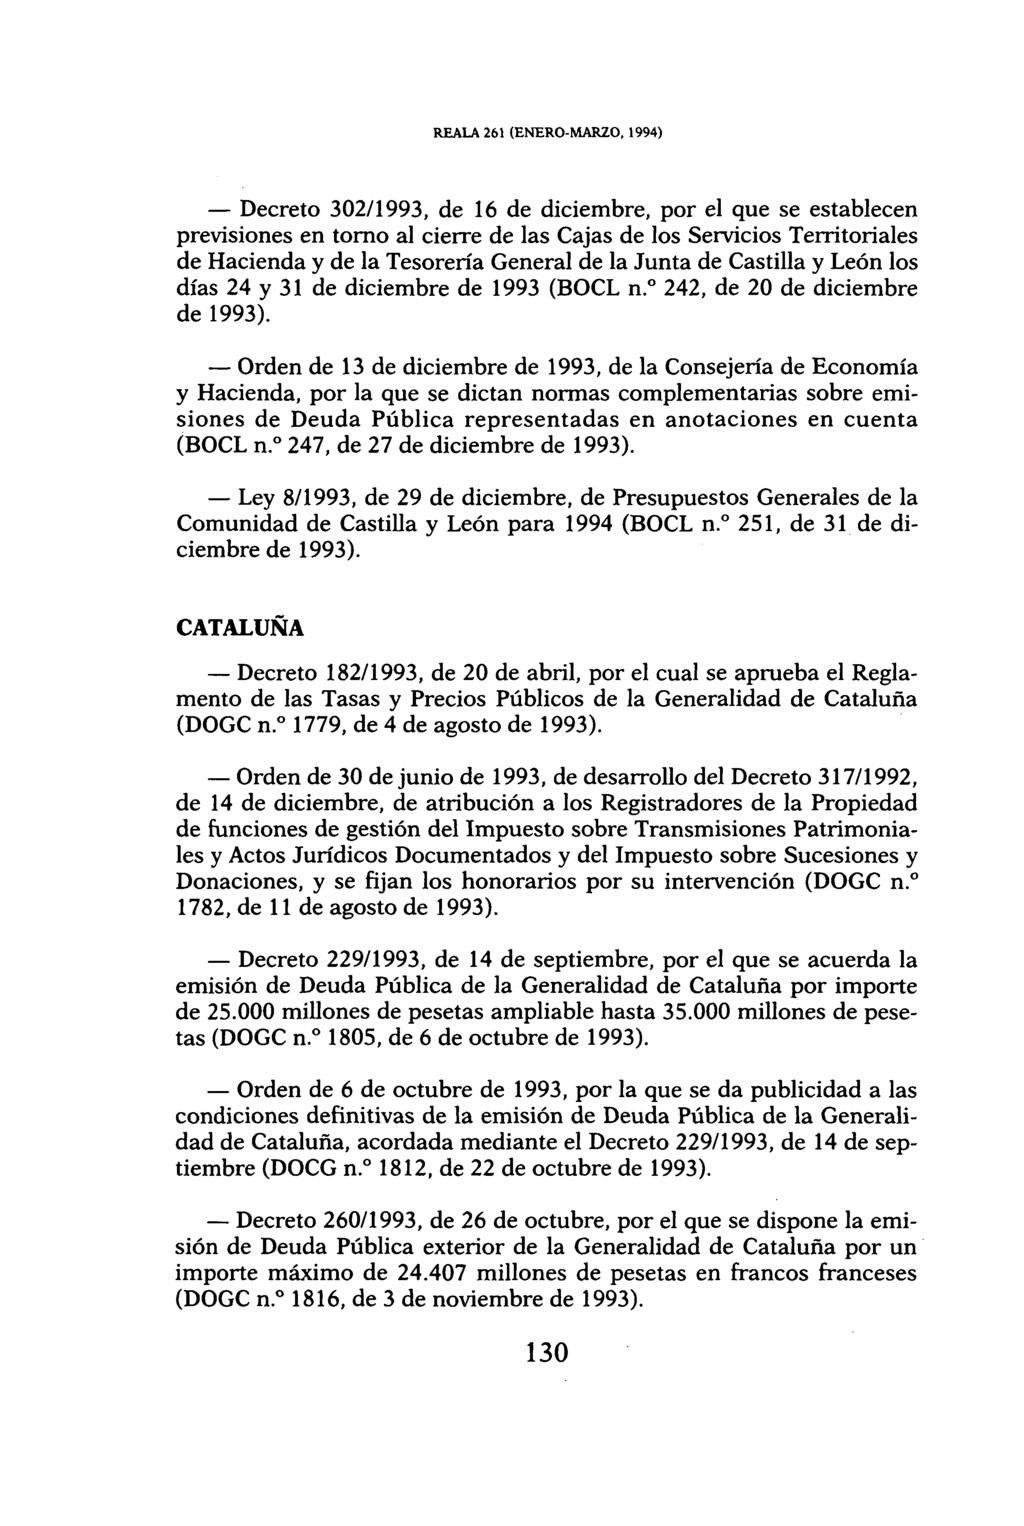 REALA 261 (ENERO-MARZO, 1994) Decreto 302/1993, de 16 de diciembre, por el que se establecen previsiones en torno al cierre de las Cajas de los Servicios Territoriales de Hacienda y de la Tesorería